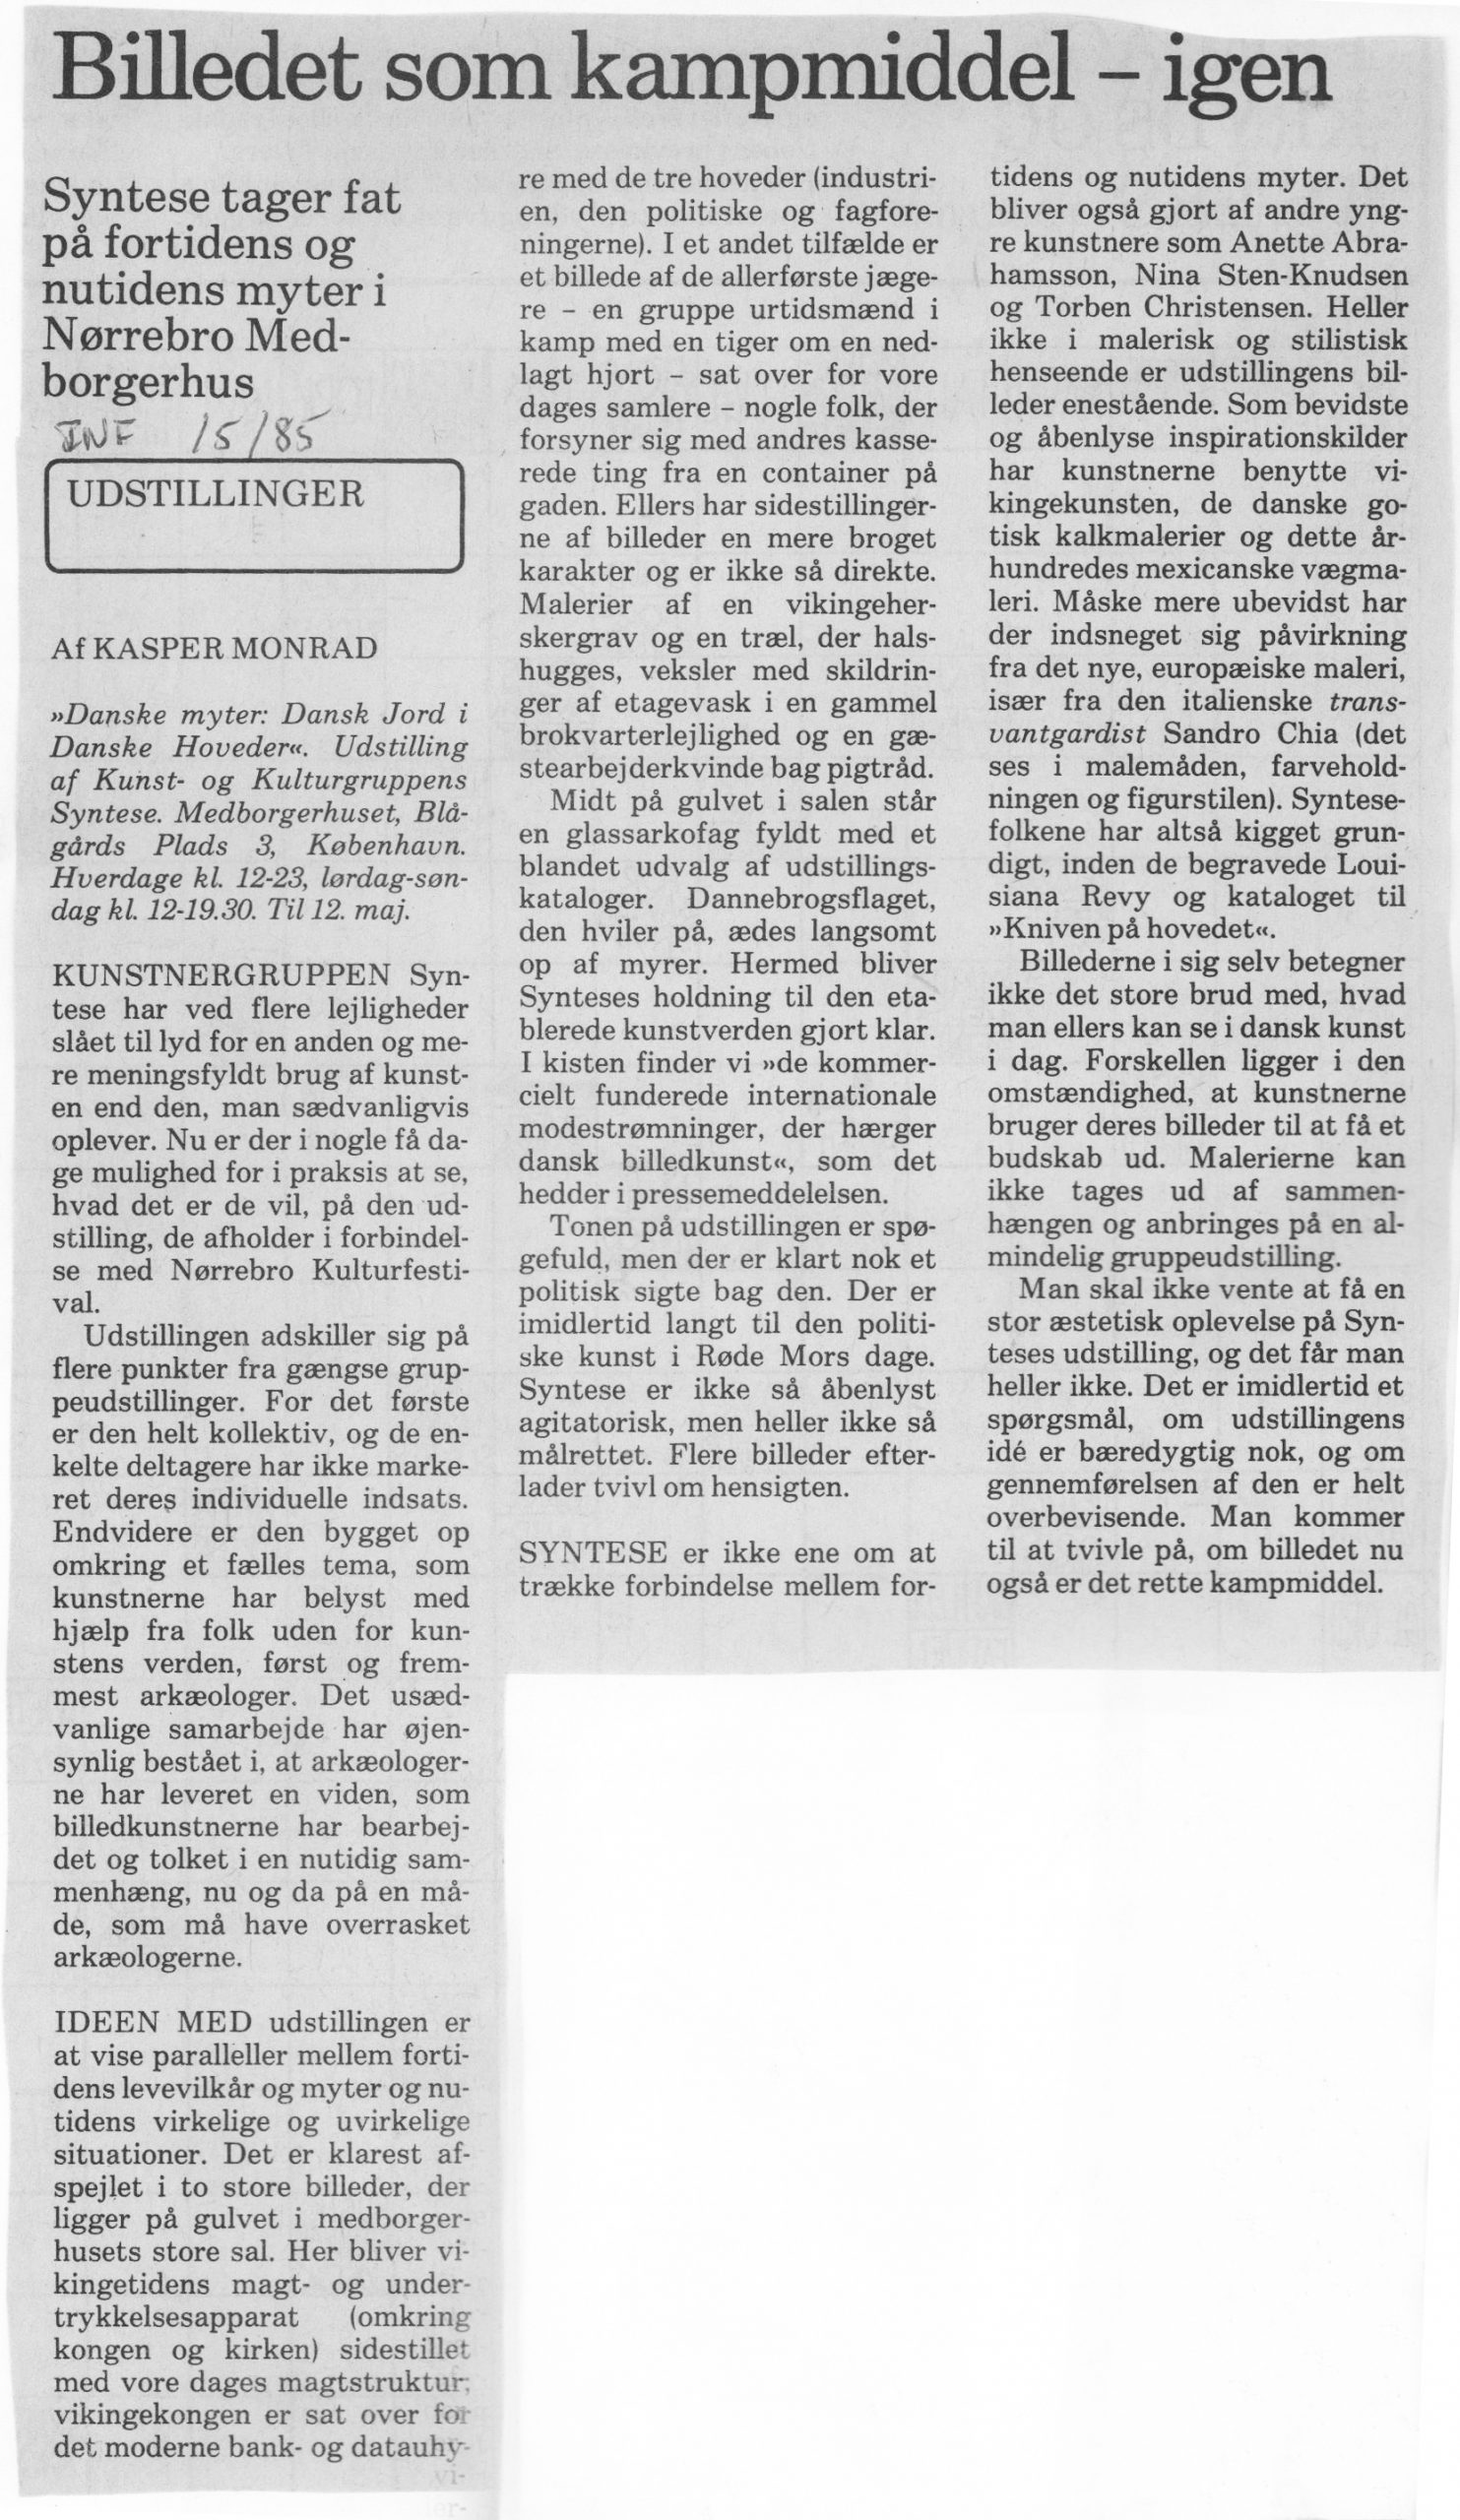 Billedet som kampmiddel – igen. Anmeldelse (Synteseudstilling. Danske Myter. København). Kasper Monrad. Information. Medio maj 1985.